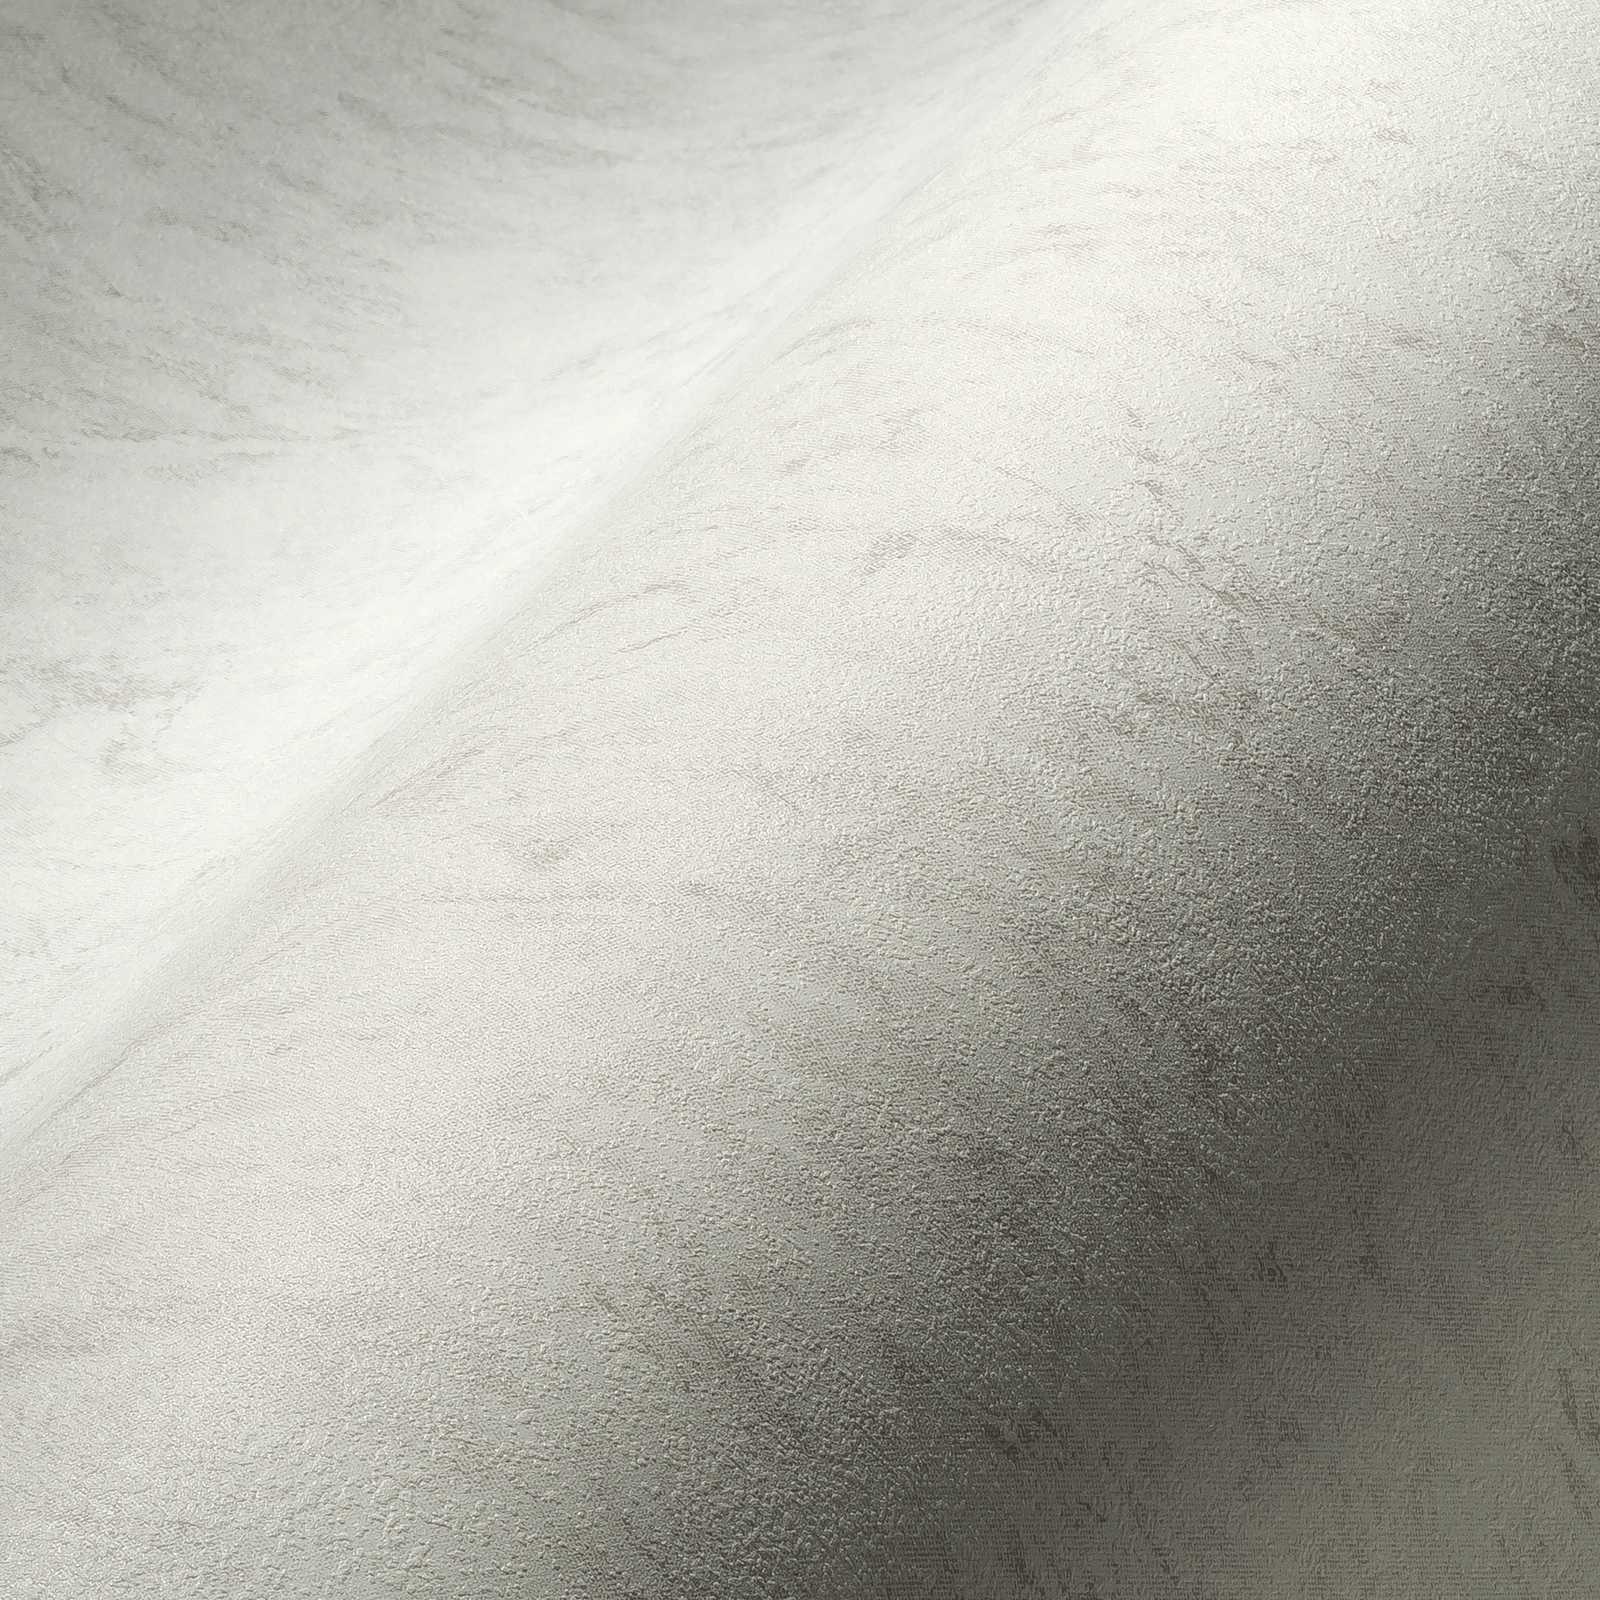             Papel pintado unitario con efecto texturizado y diseño moteado - gris, beige, crema
        